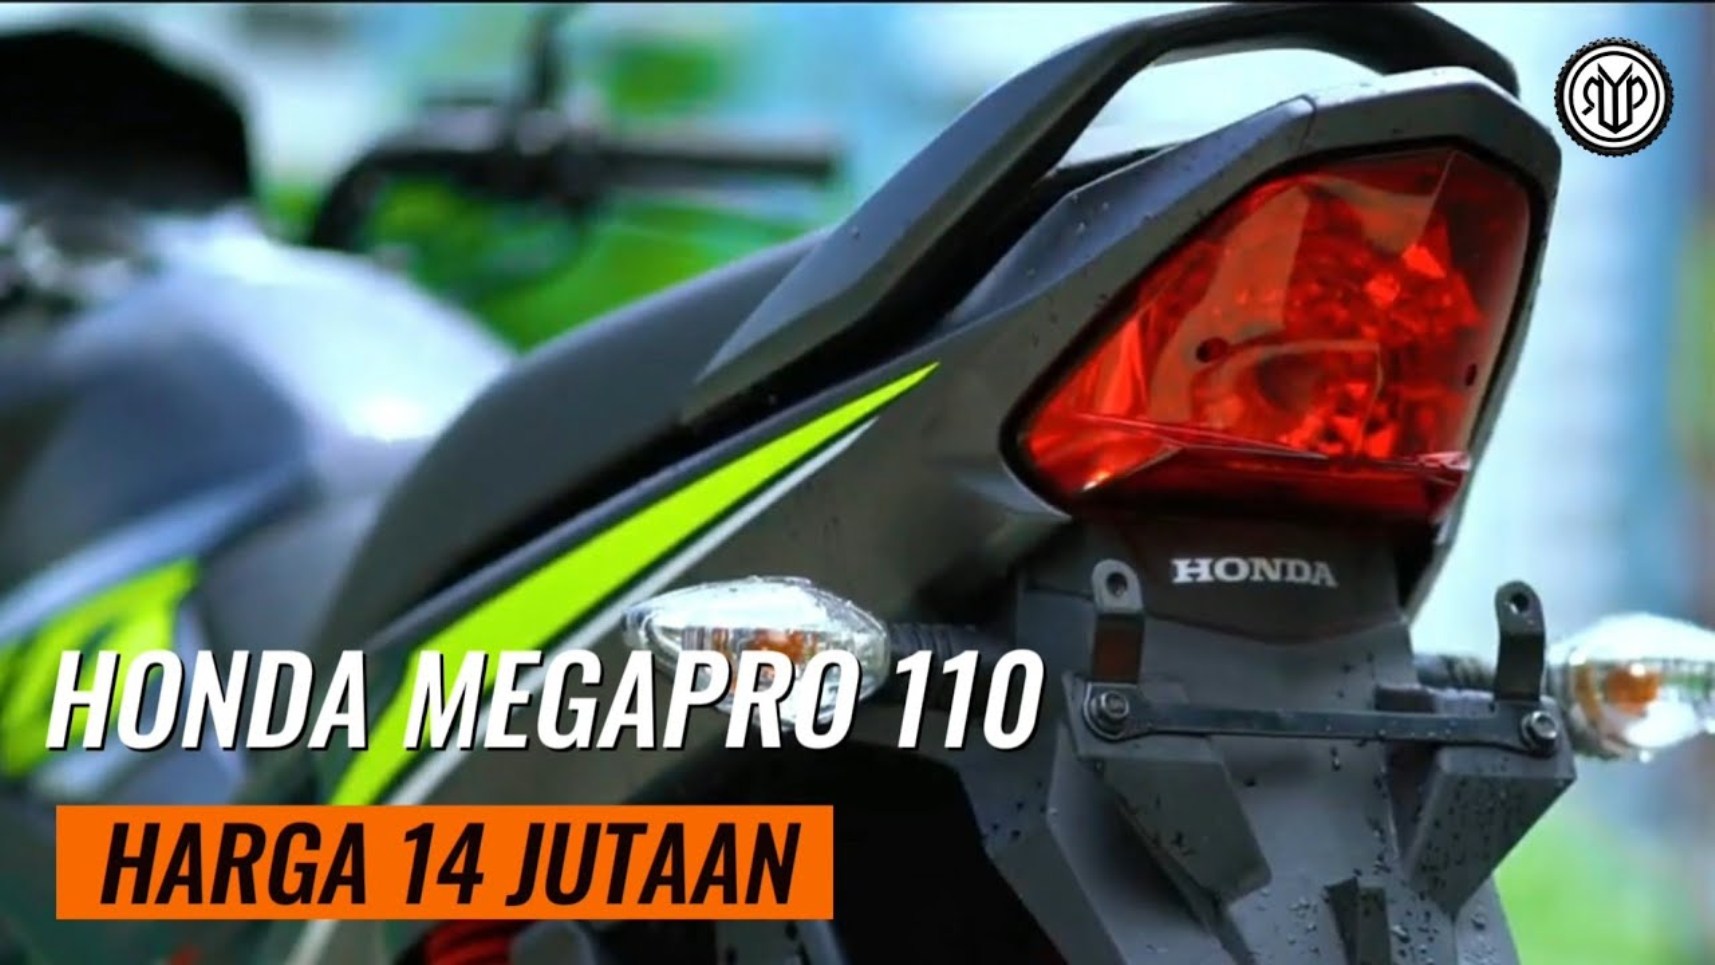 Honda Mega Pro 110, Harga 14 Jutaan Resmi Dirilis, Yuk Buruan Beli ke Dealer Honda!